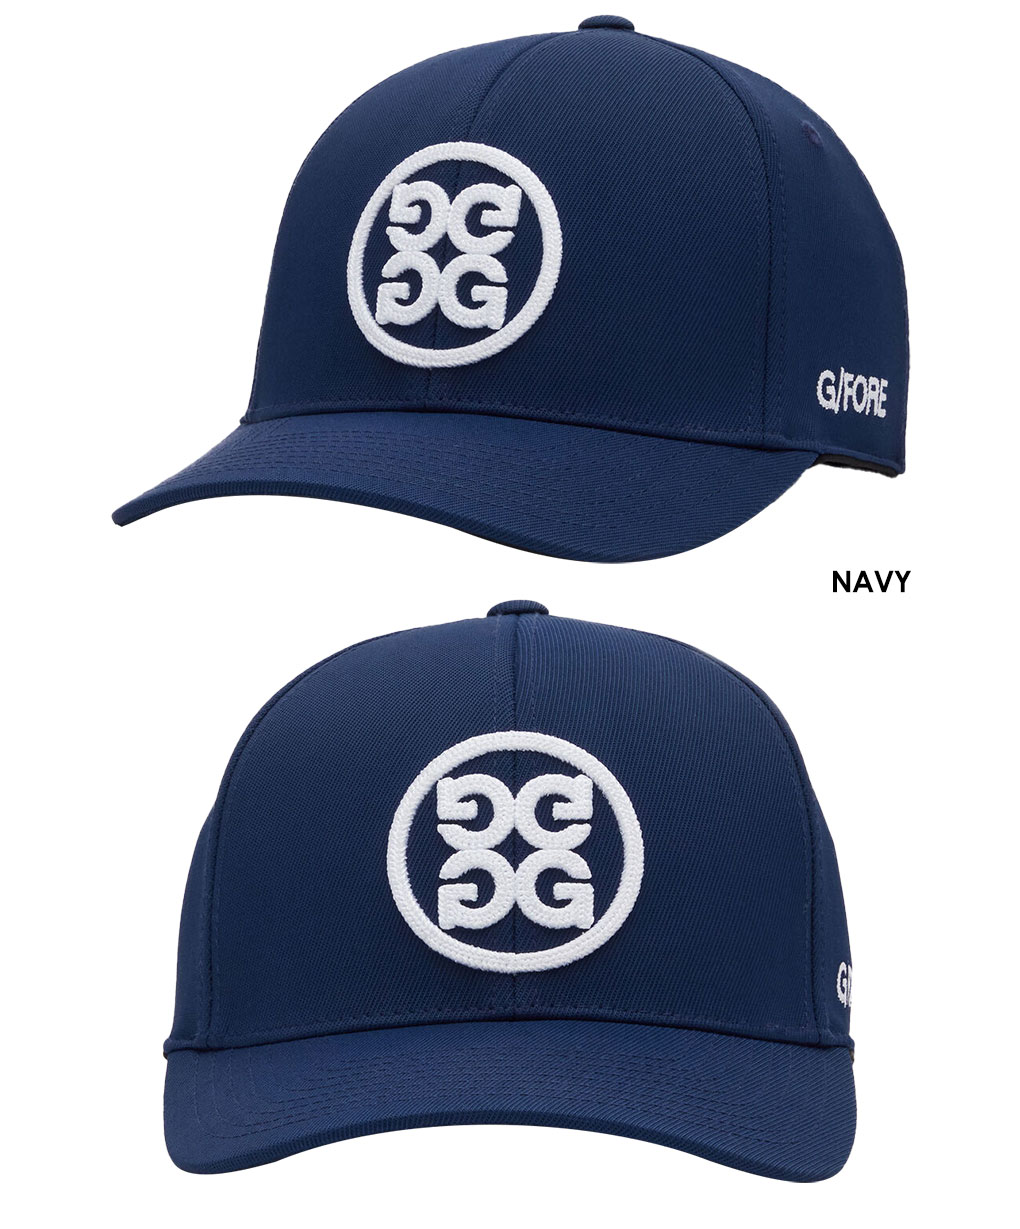 Gfore ジーフォア ゴルフキャップ CIRCLE G'S STRETCH TWILL SNAPBACK HAT 帽子 GMH000004  USA直輸入品